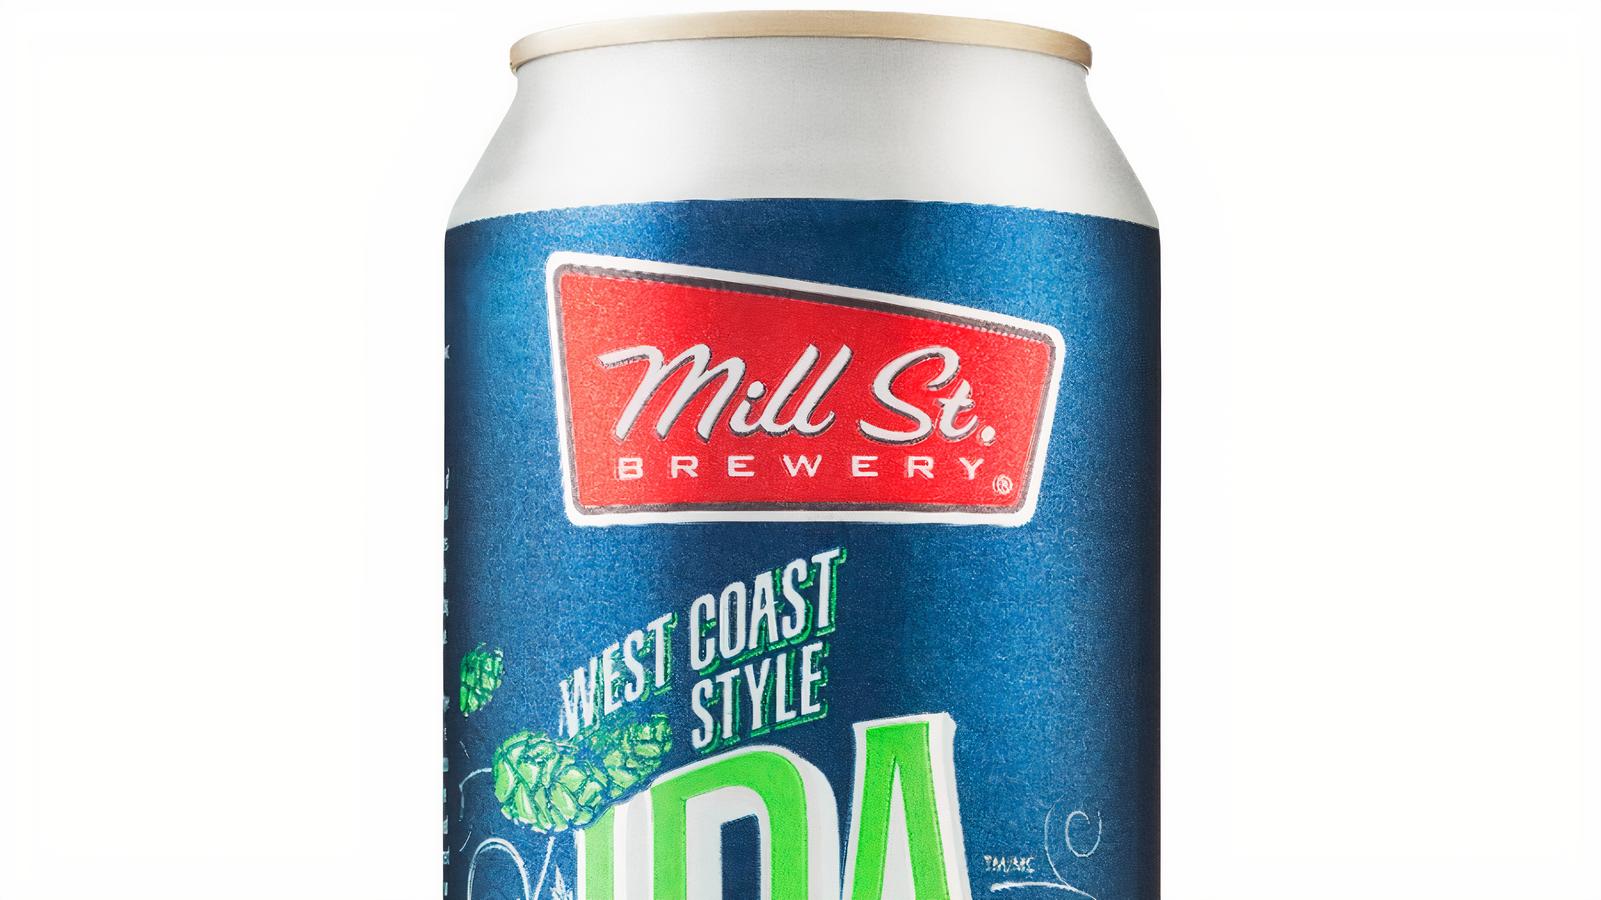 Millsteet West Coast IPA, 473mL beer (6.6% ABV)